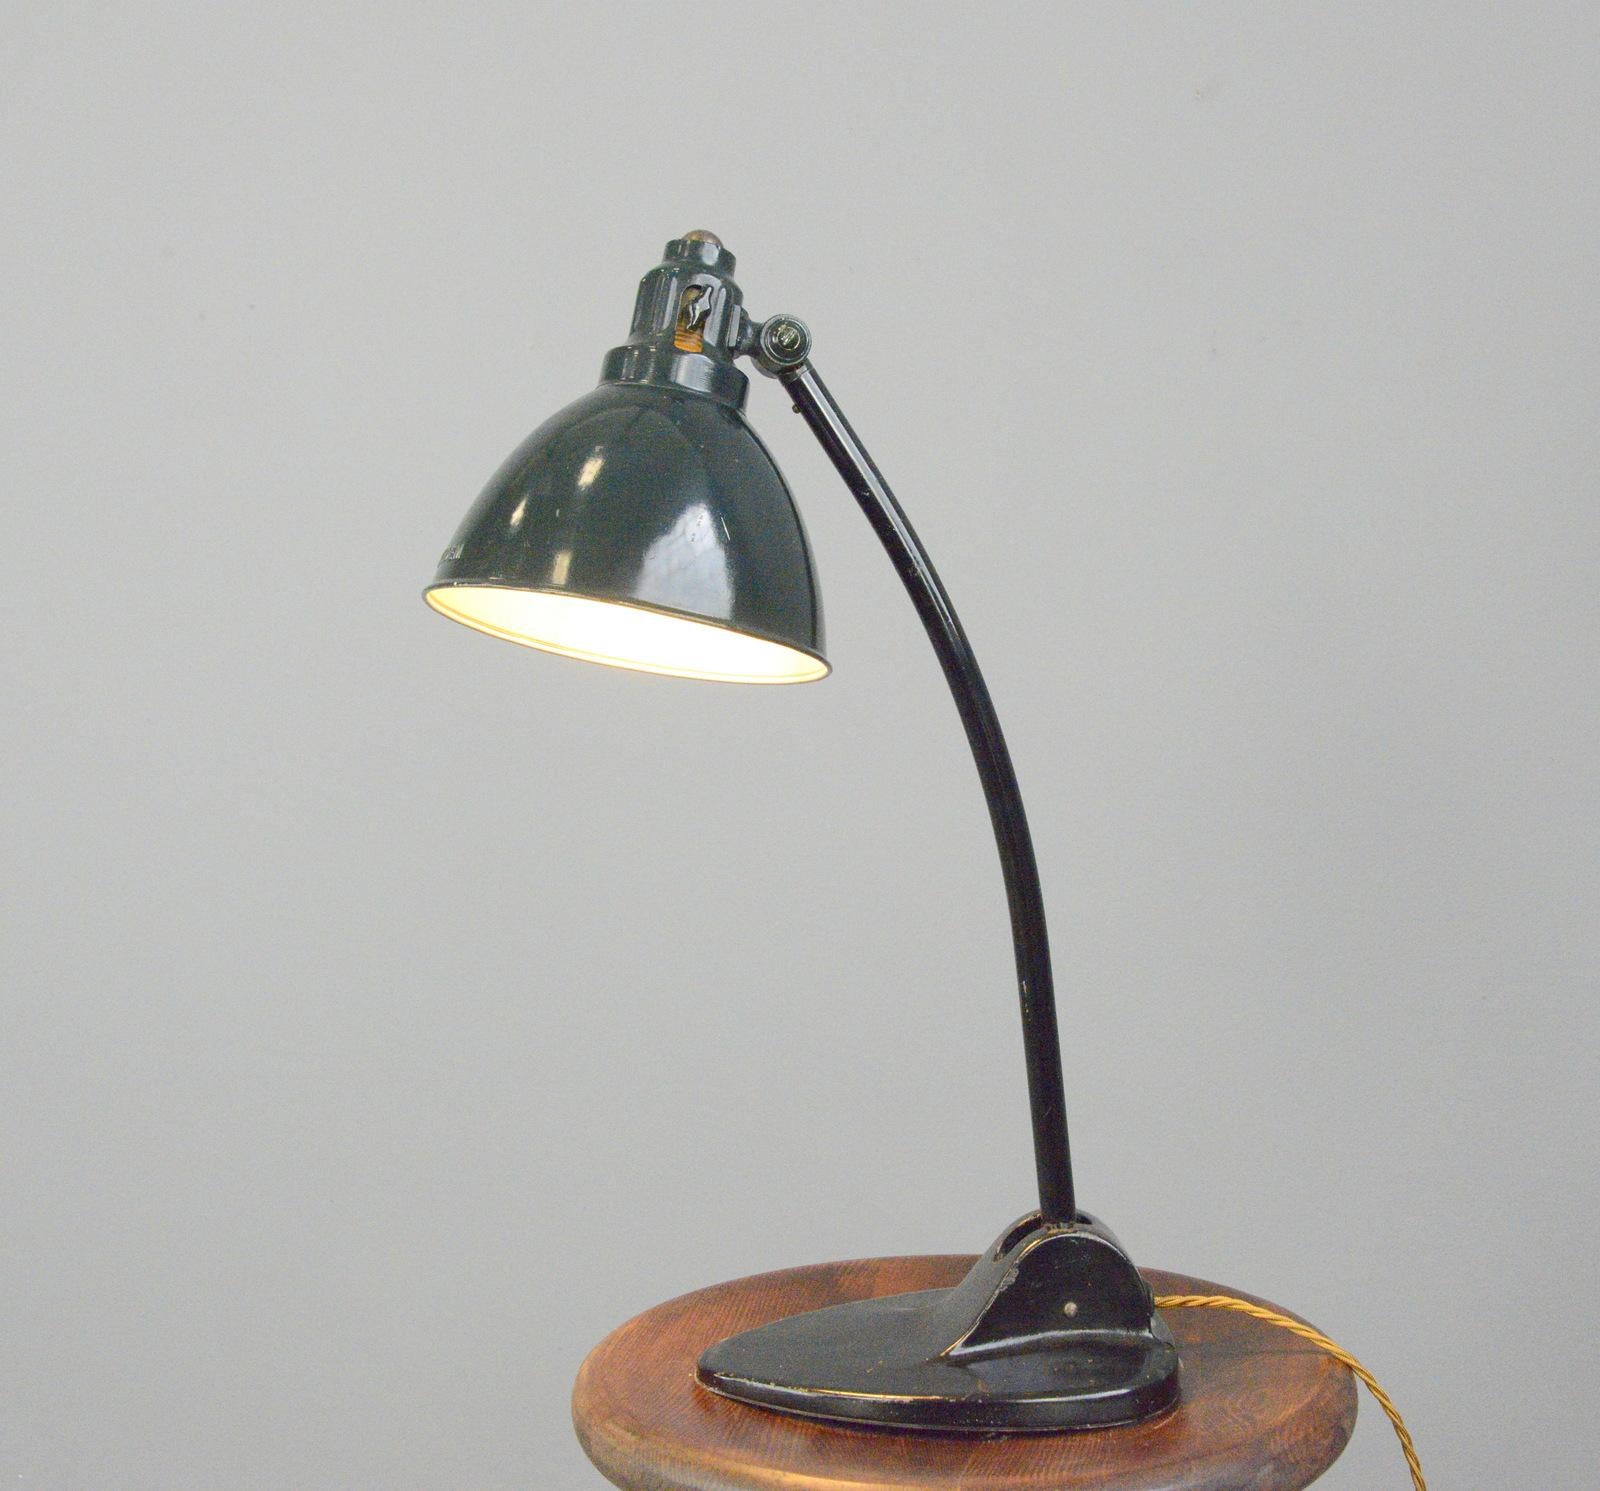 Lampe de table Kandem modèle 573 Circa 1920

- Abat-jour en acier pressé
- Marquage 